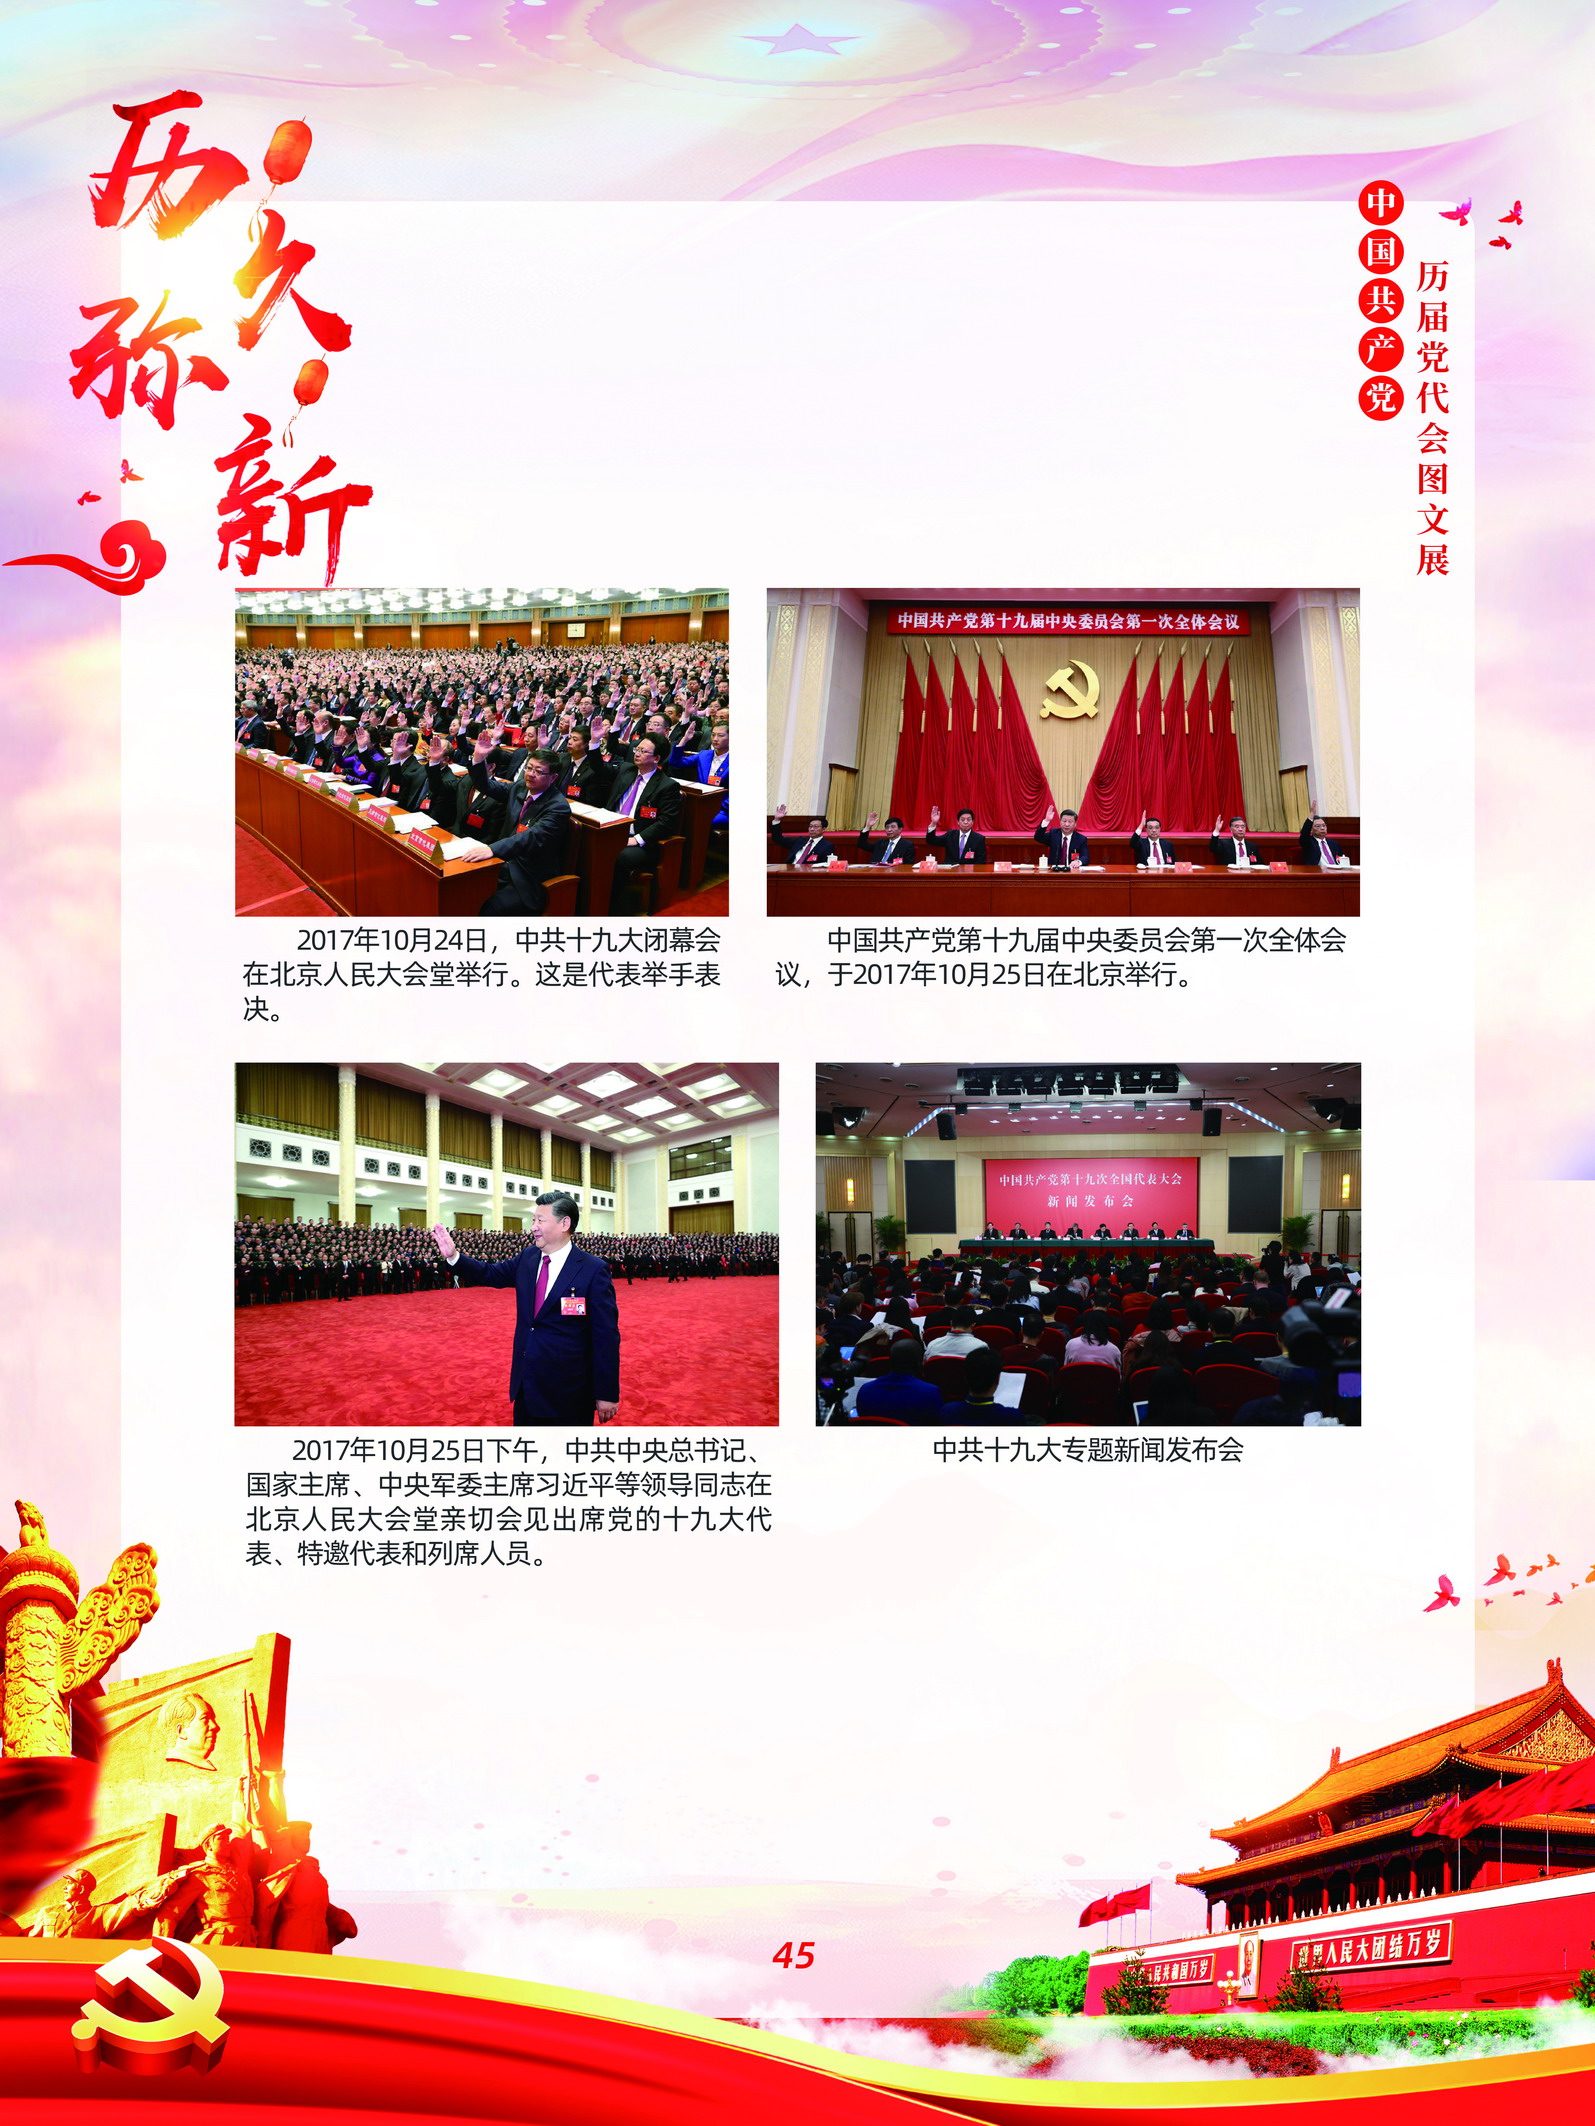 中国共产党历届党代会图文展_图44